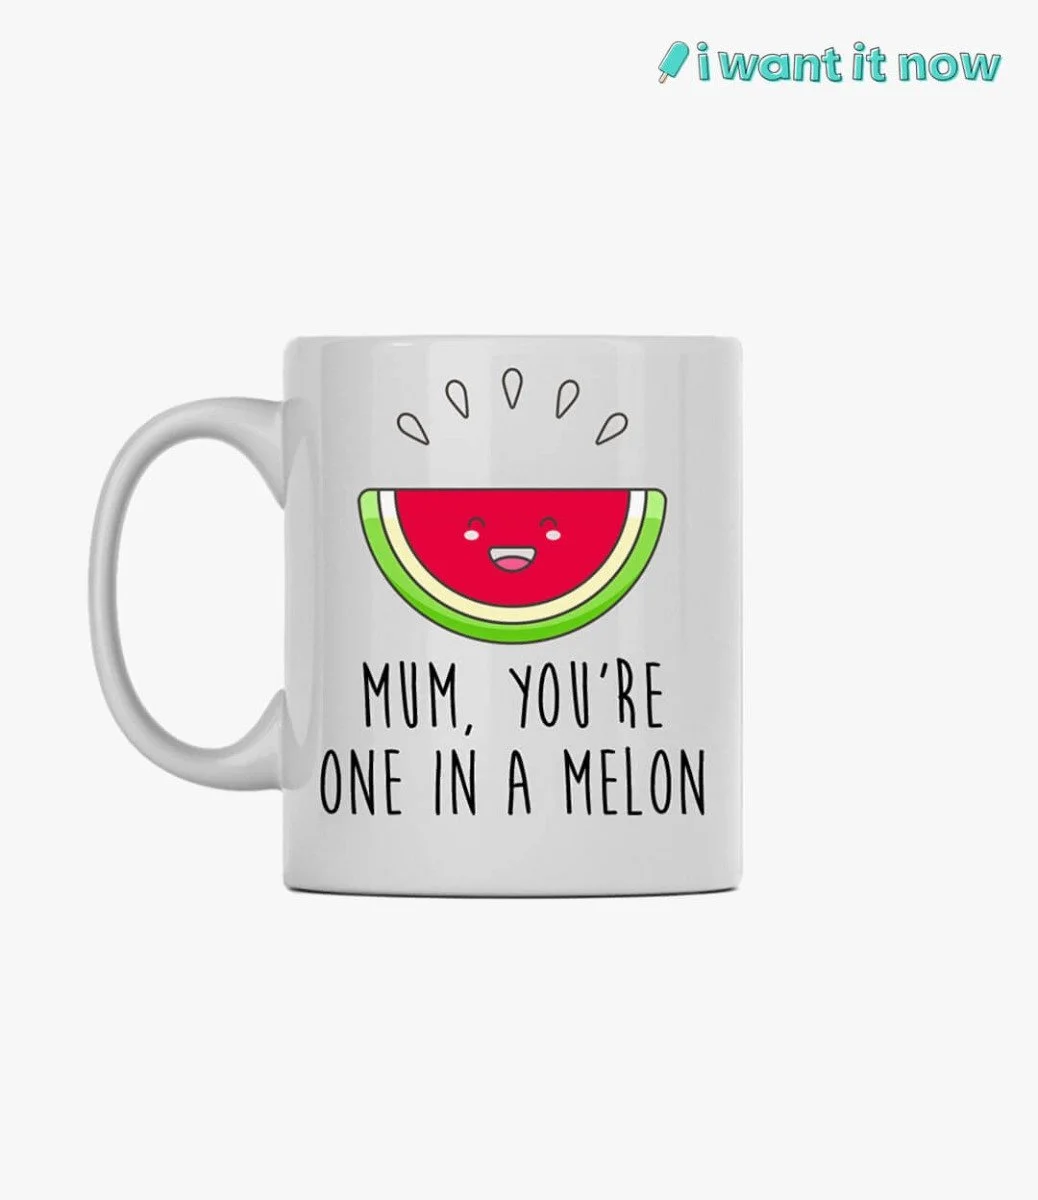 Mum, you're one in a melon Mug By I Want It Now